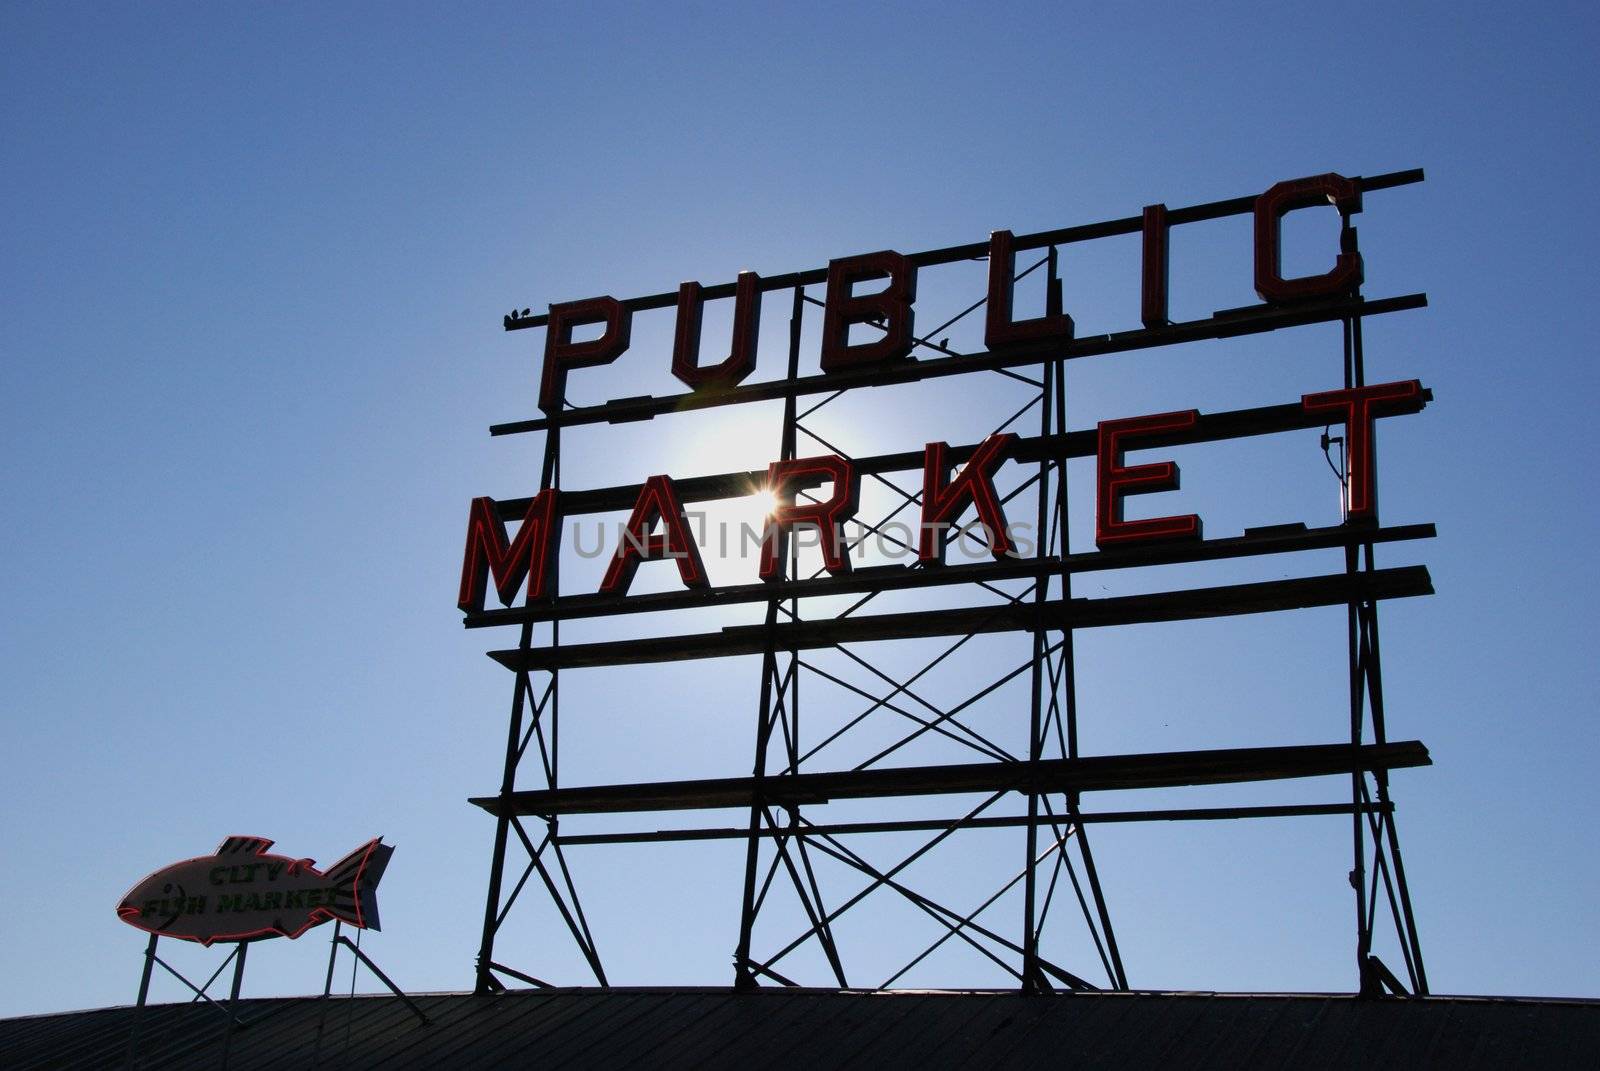 Public market by seattlephoto